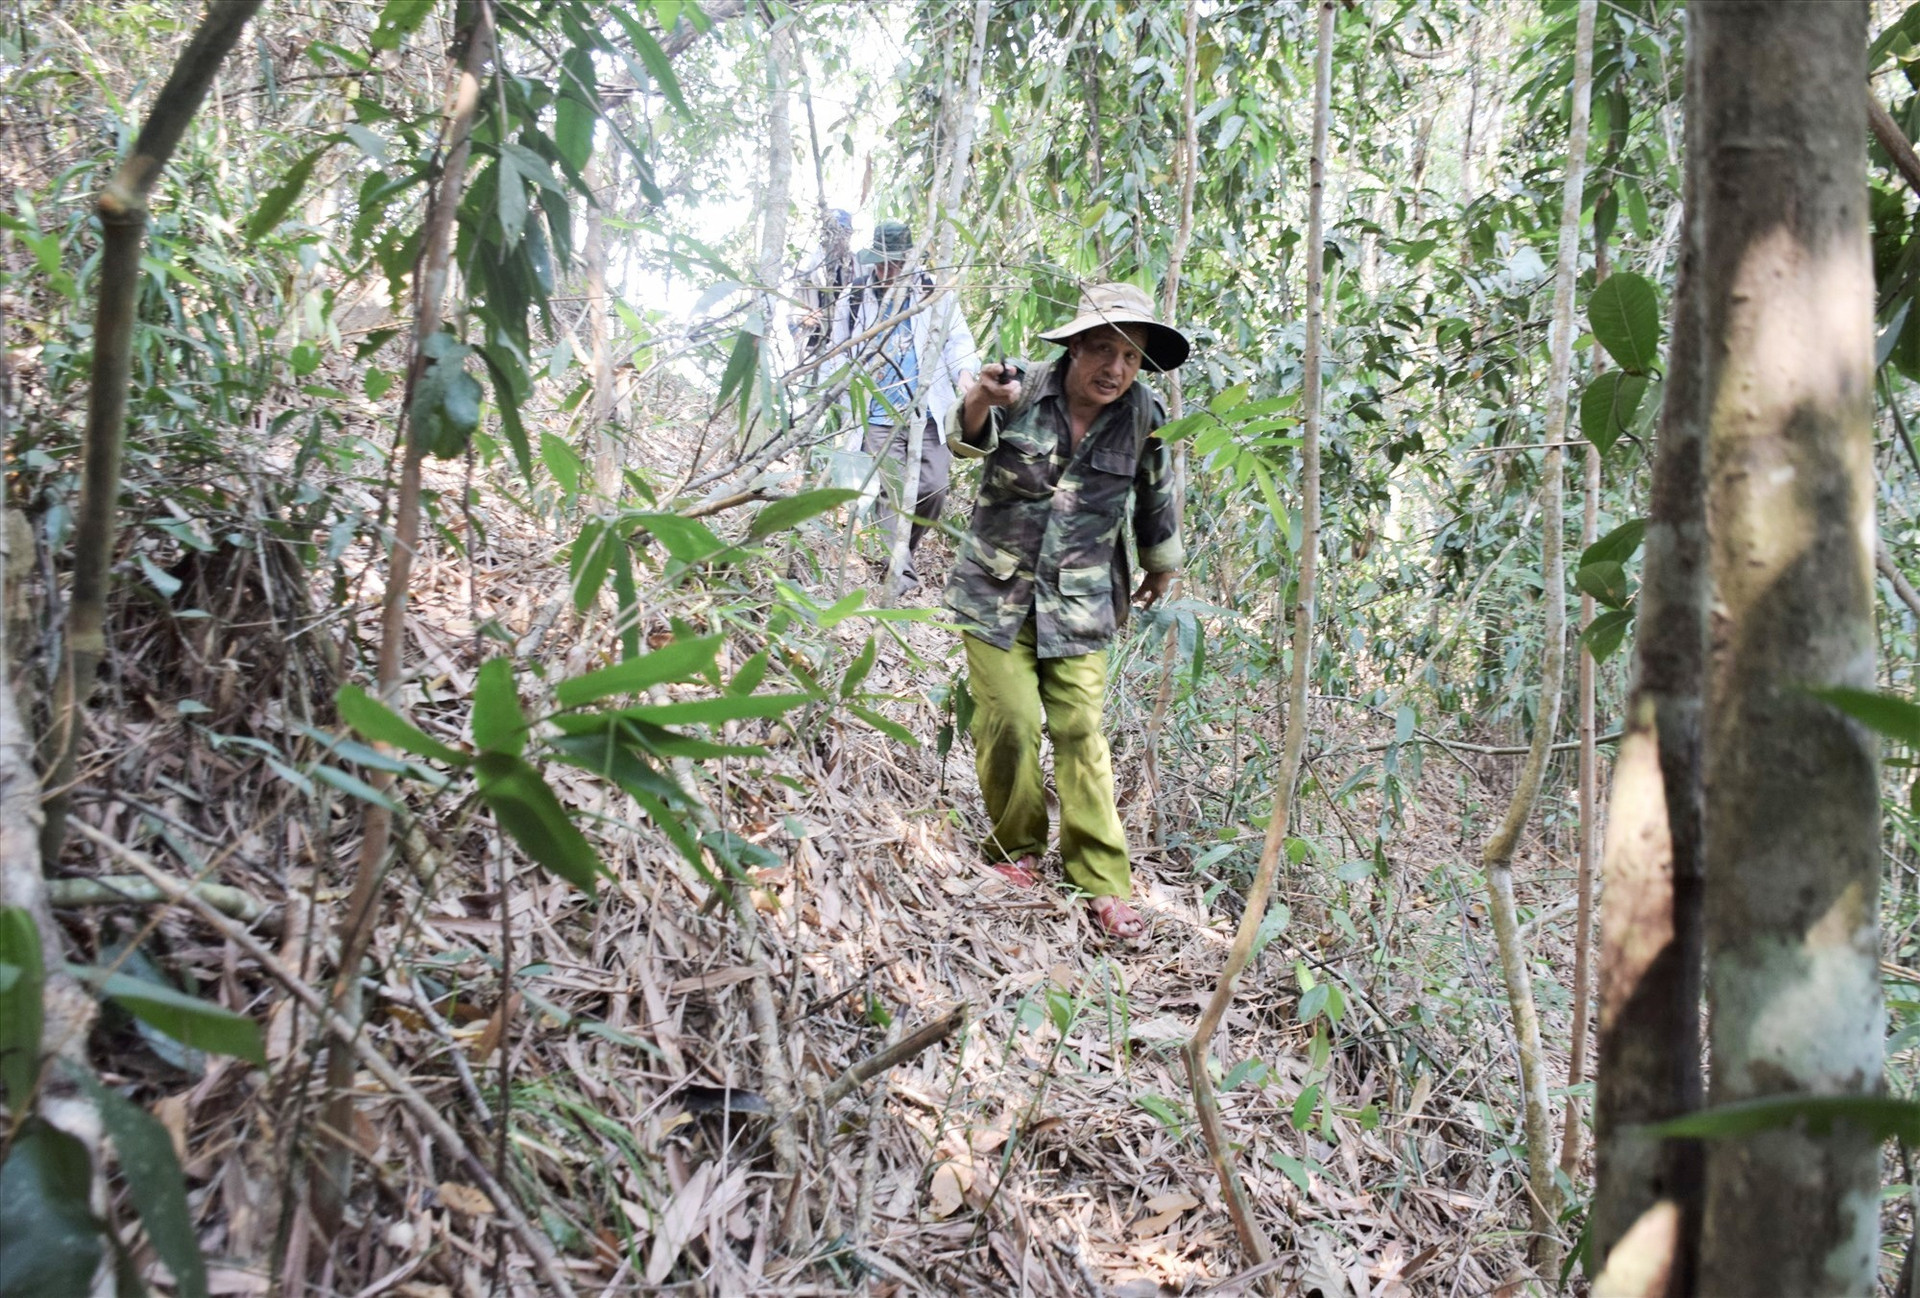 Nhóm ông Nguyễn Ba tiến vào khu vực rừng tự nhiên để tìm nấm. Ảnh: T.T